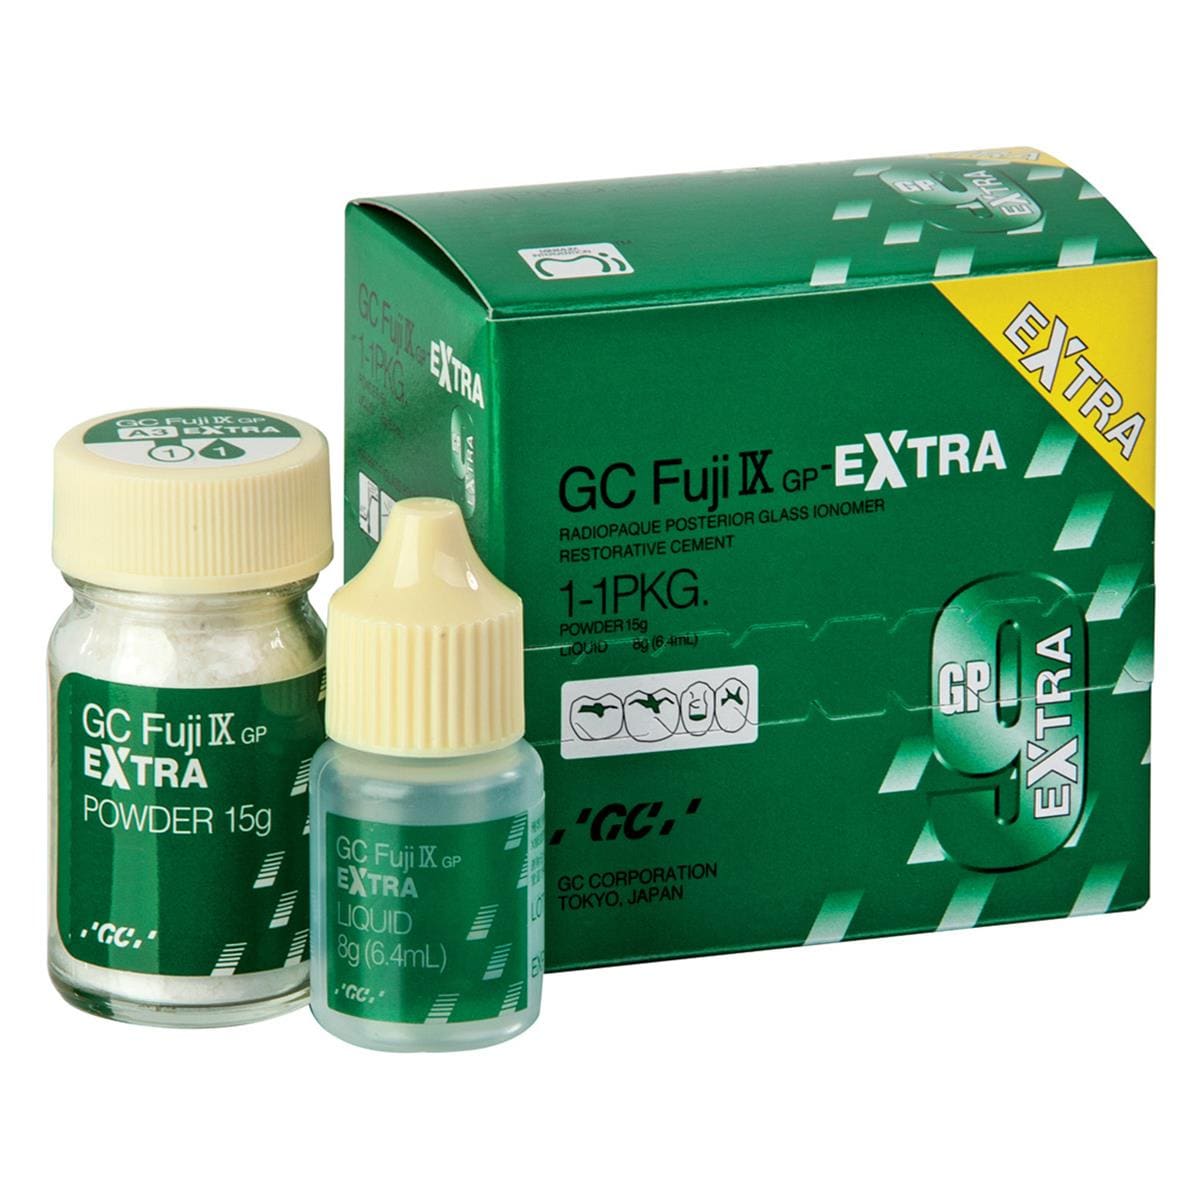 Fuji IX GP Extra 1-1 Pack A2 Powder & Liquid